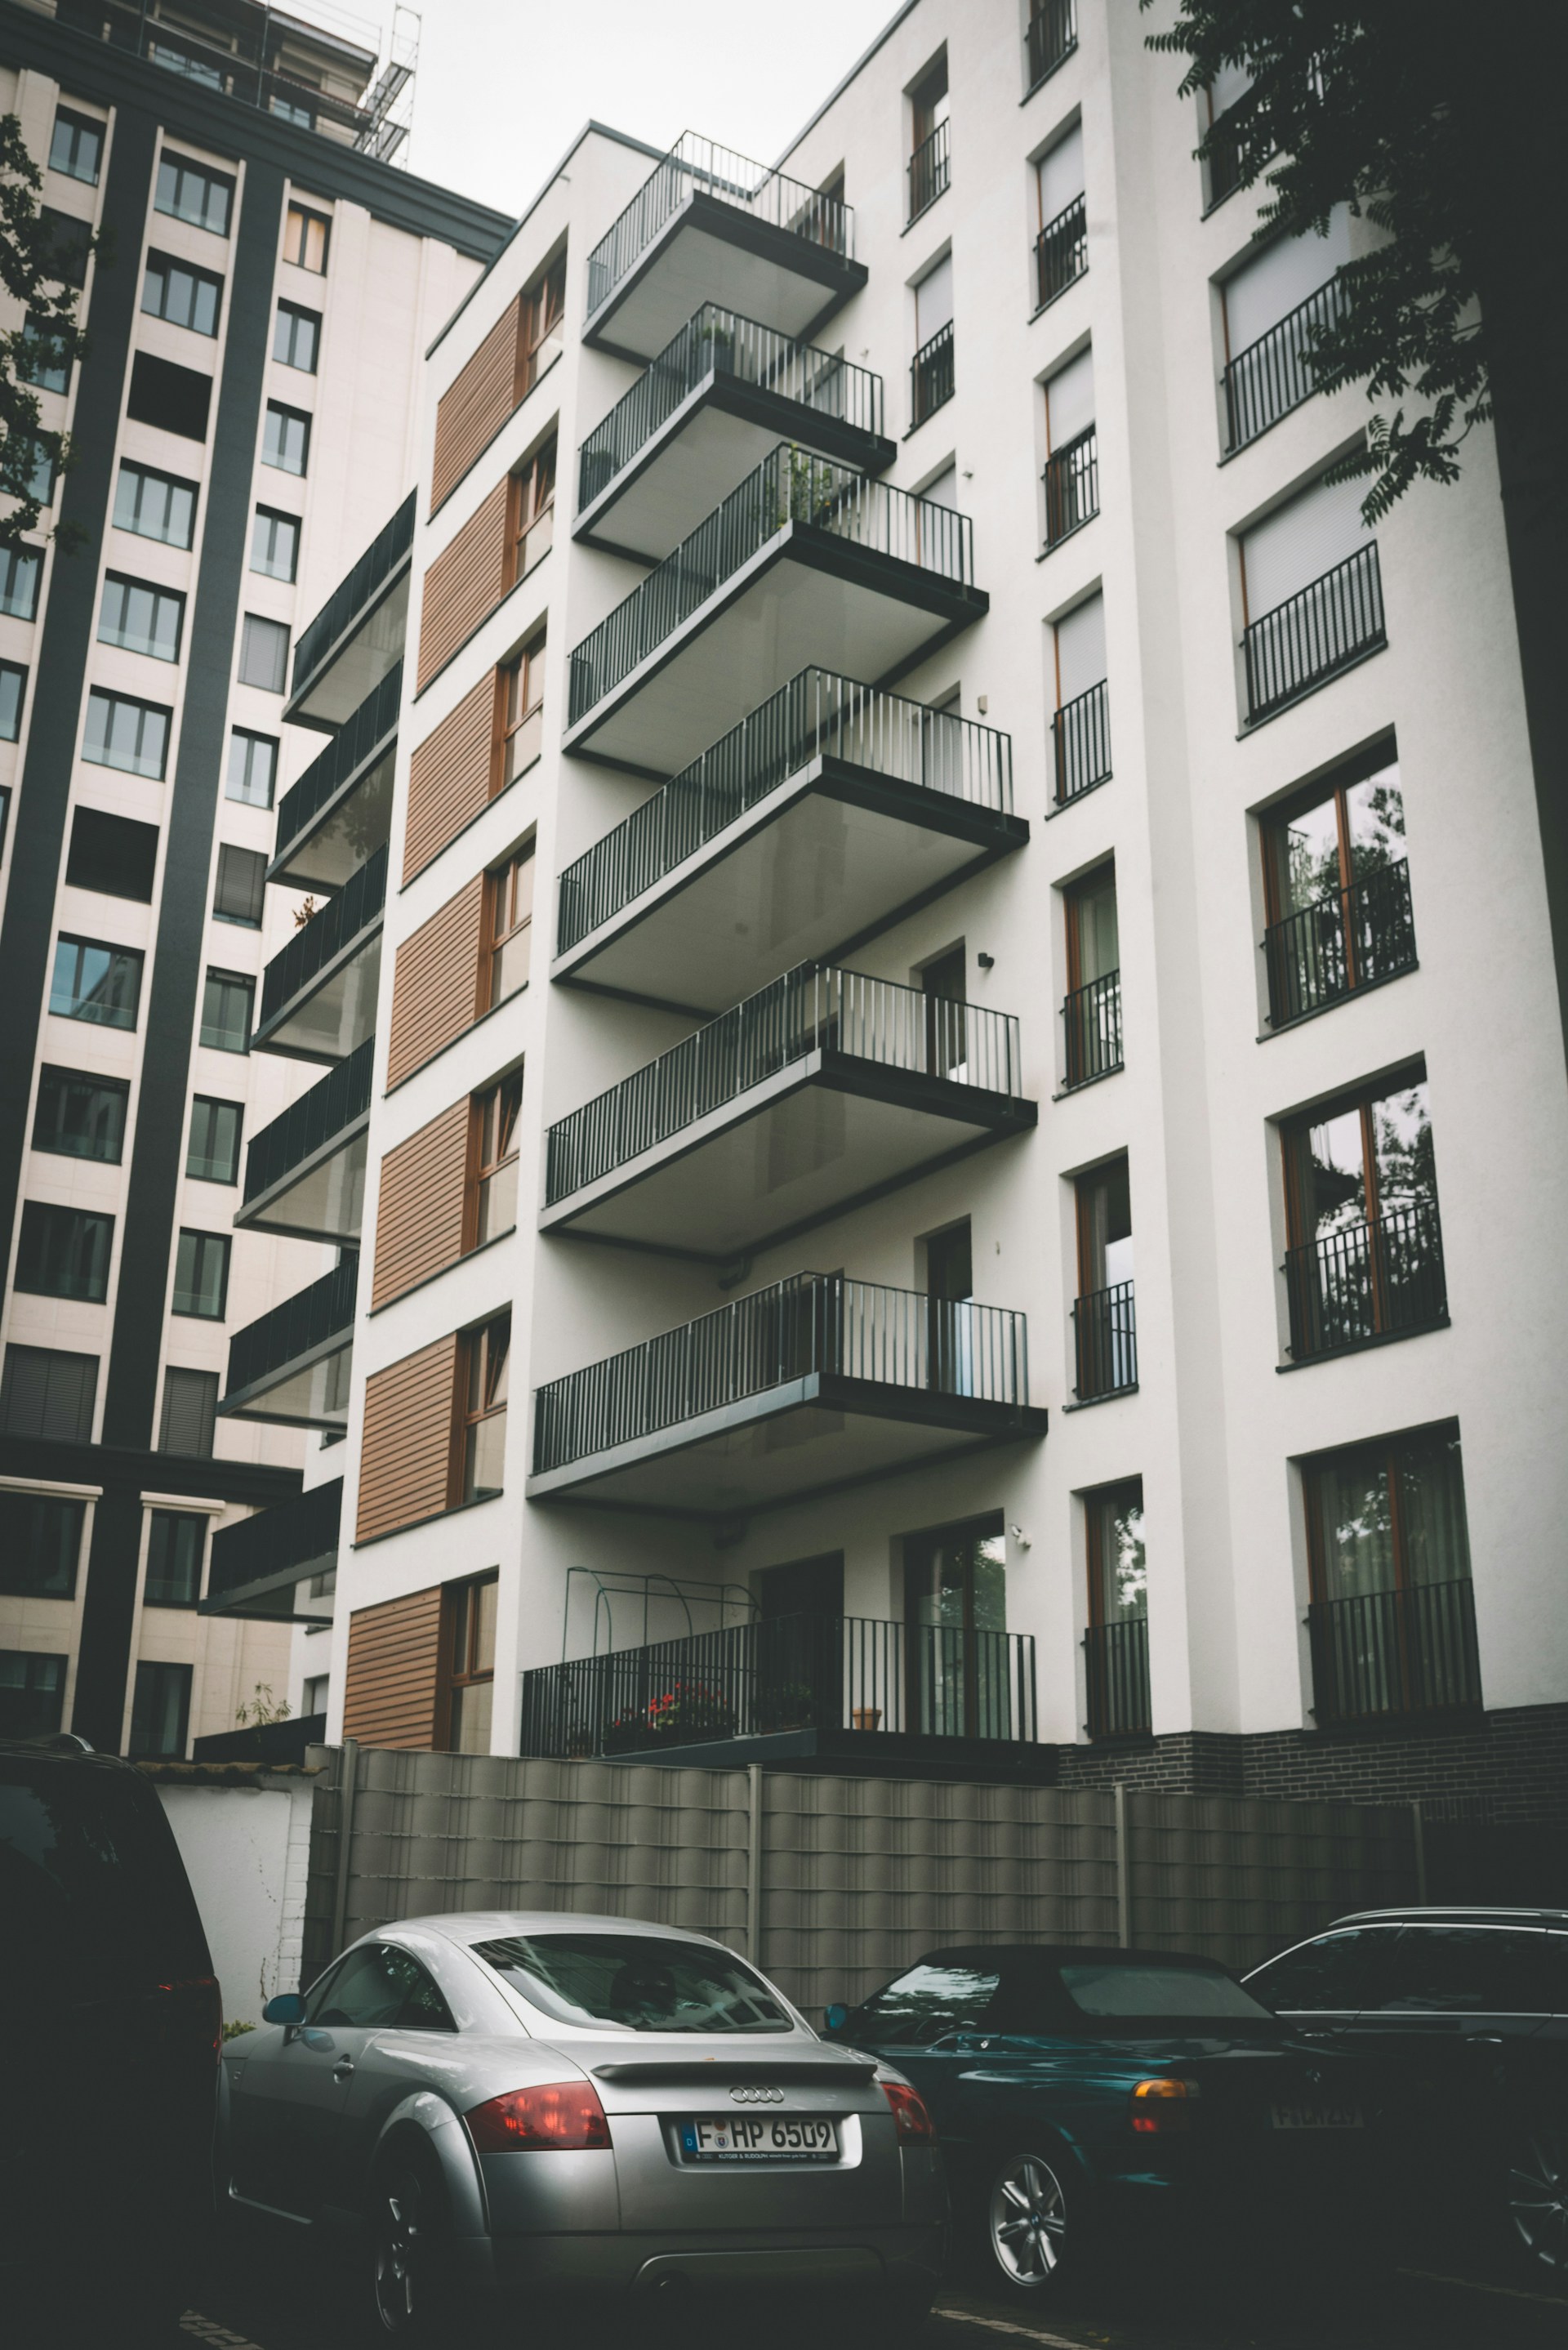 An apartment building parking lot | Source: Unsplash